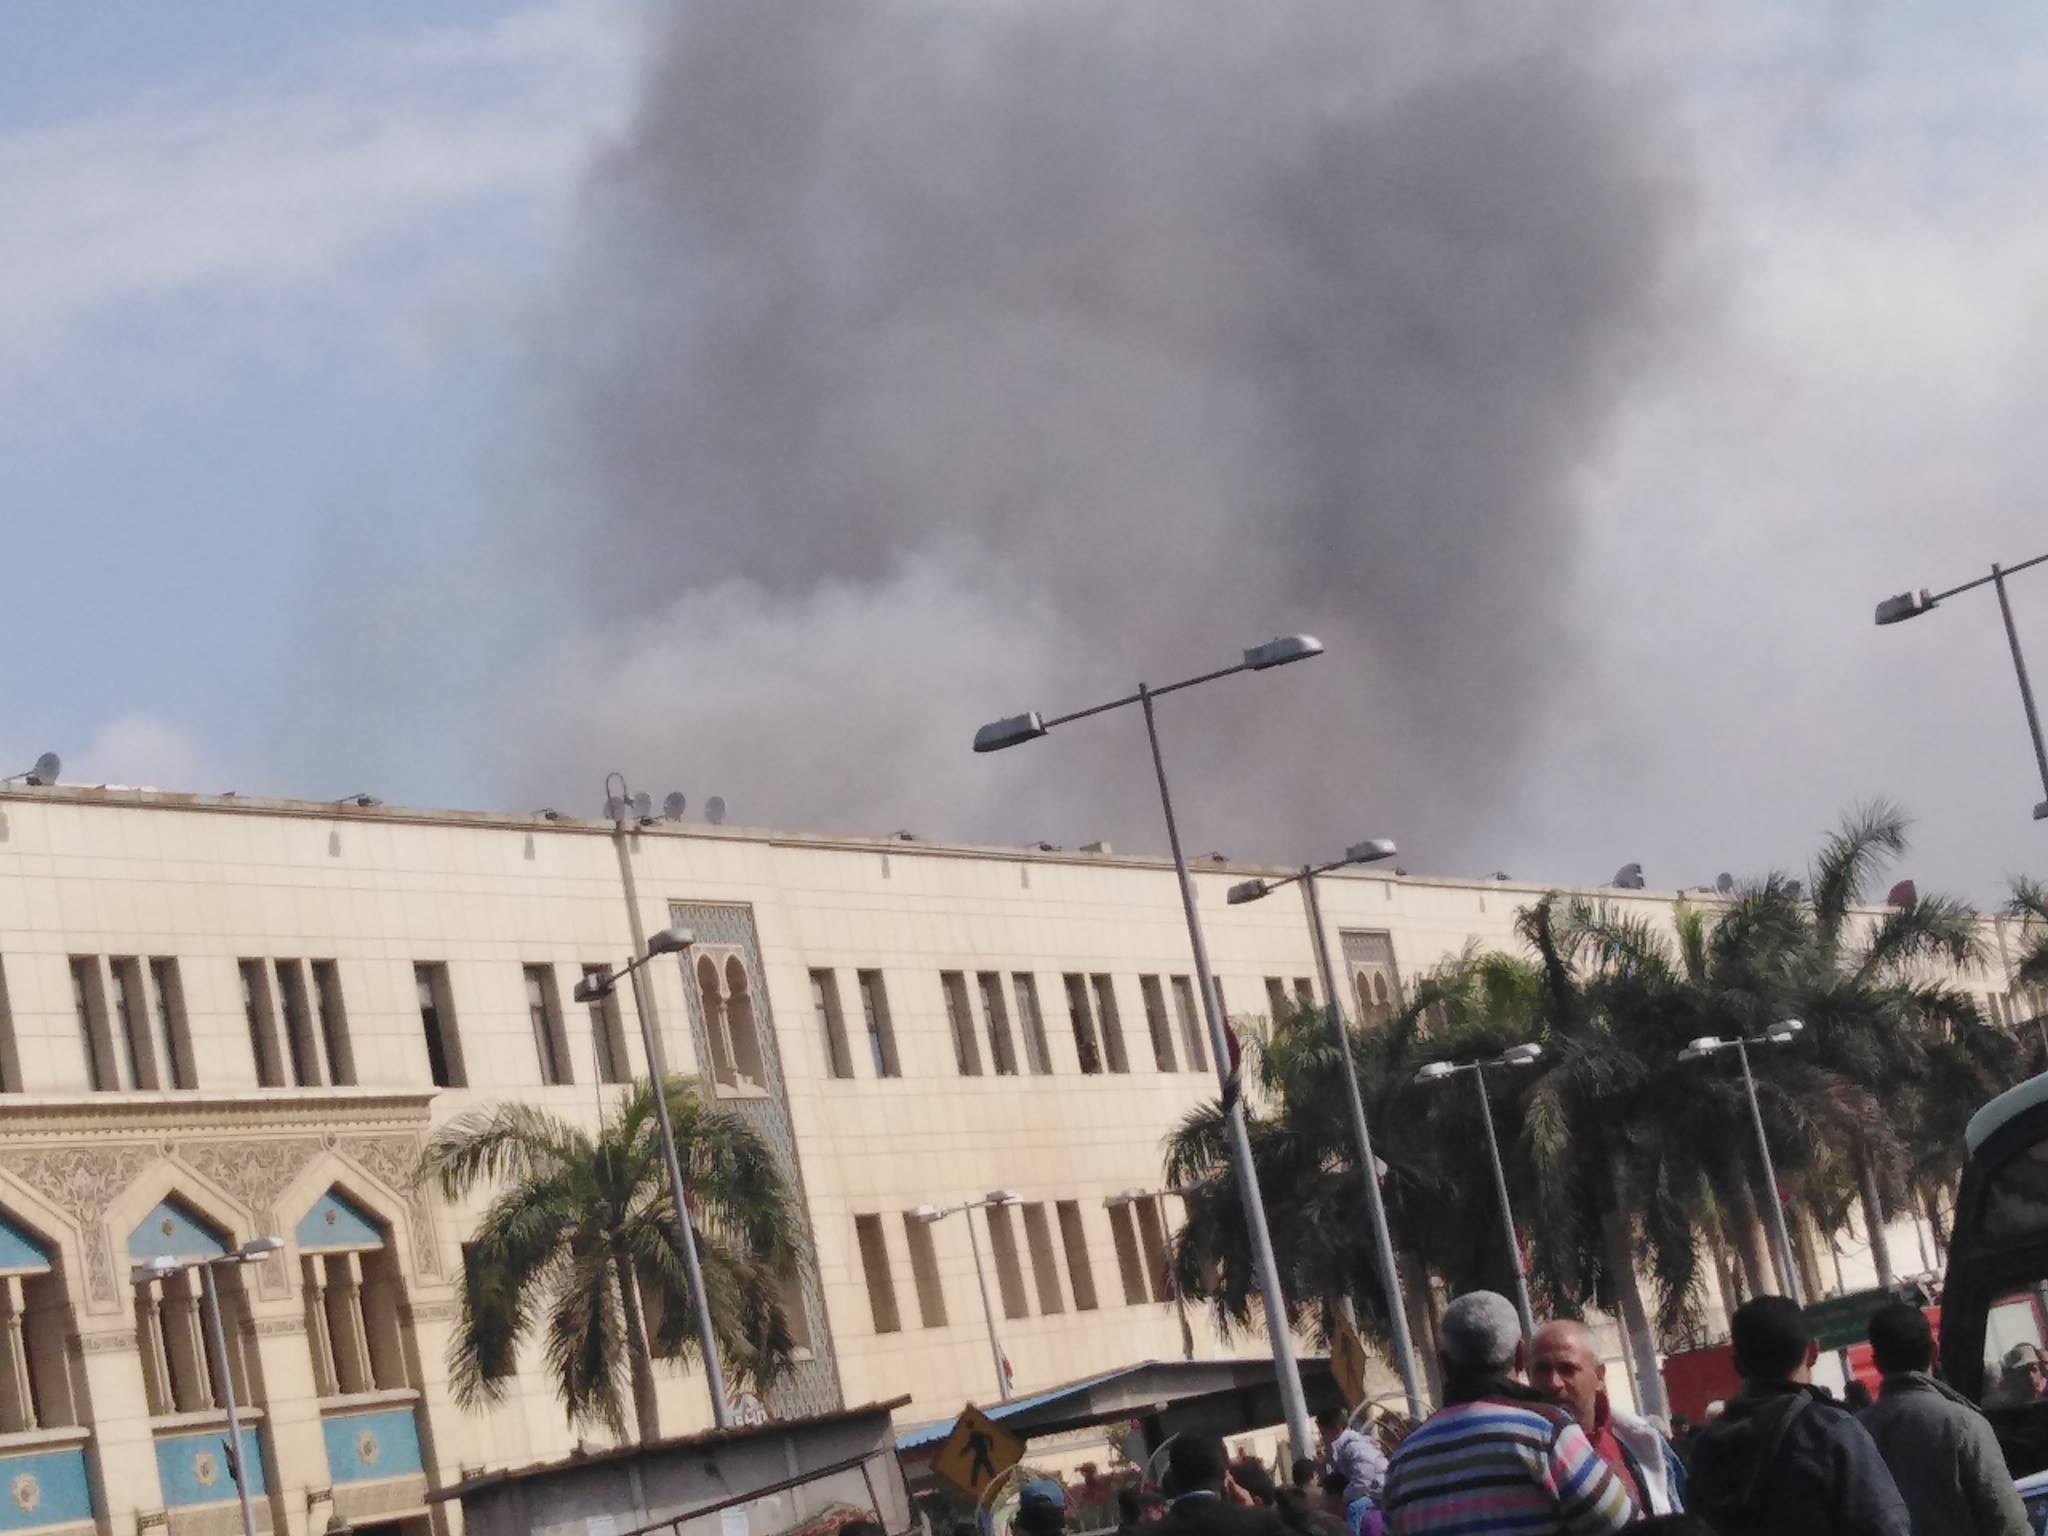   «السكة الحديد» تقرر إيقاف حركة القطارات بمحطة مصر بعد الحريق